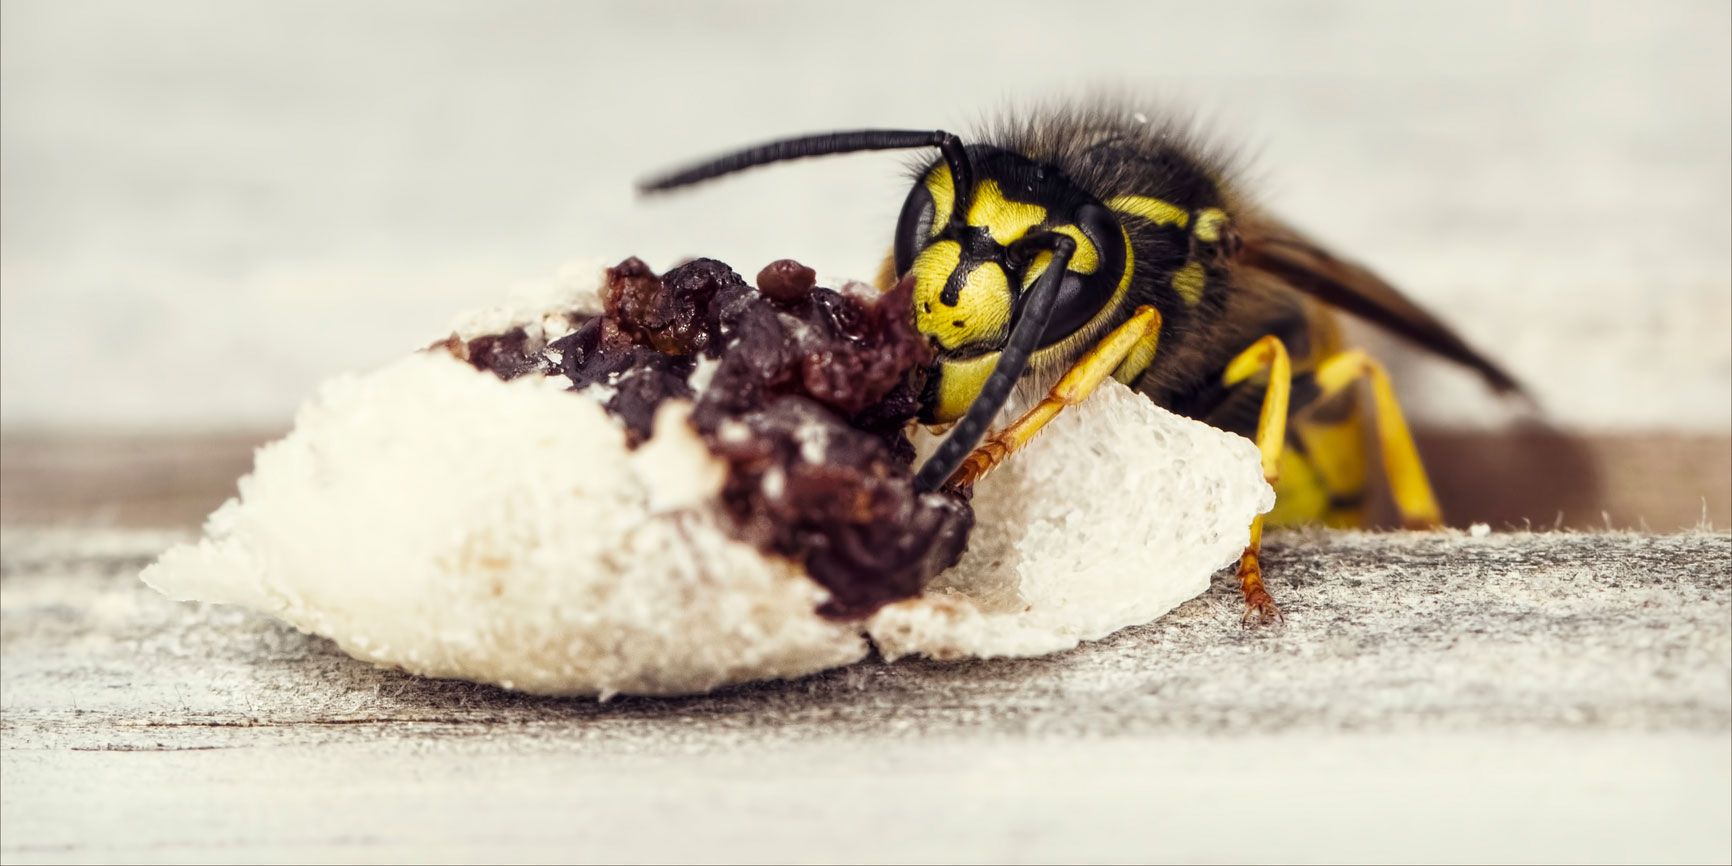 Wasp on food